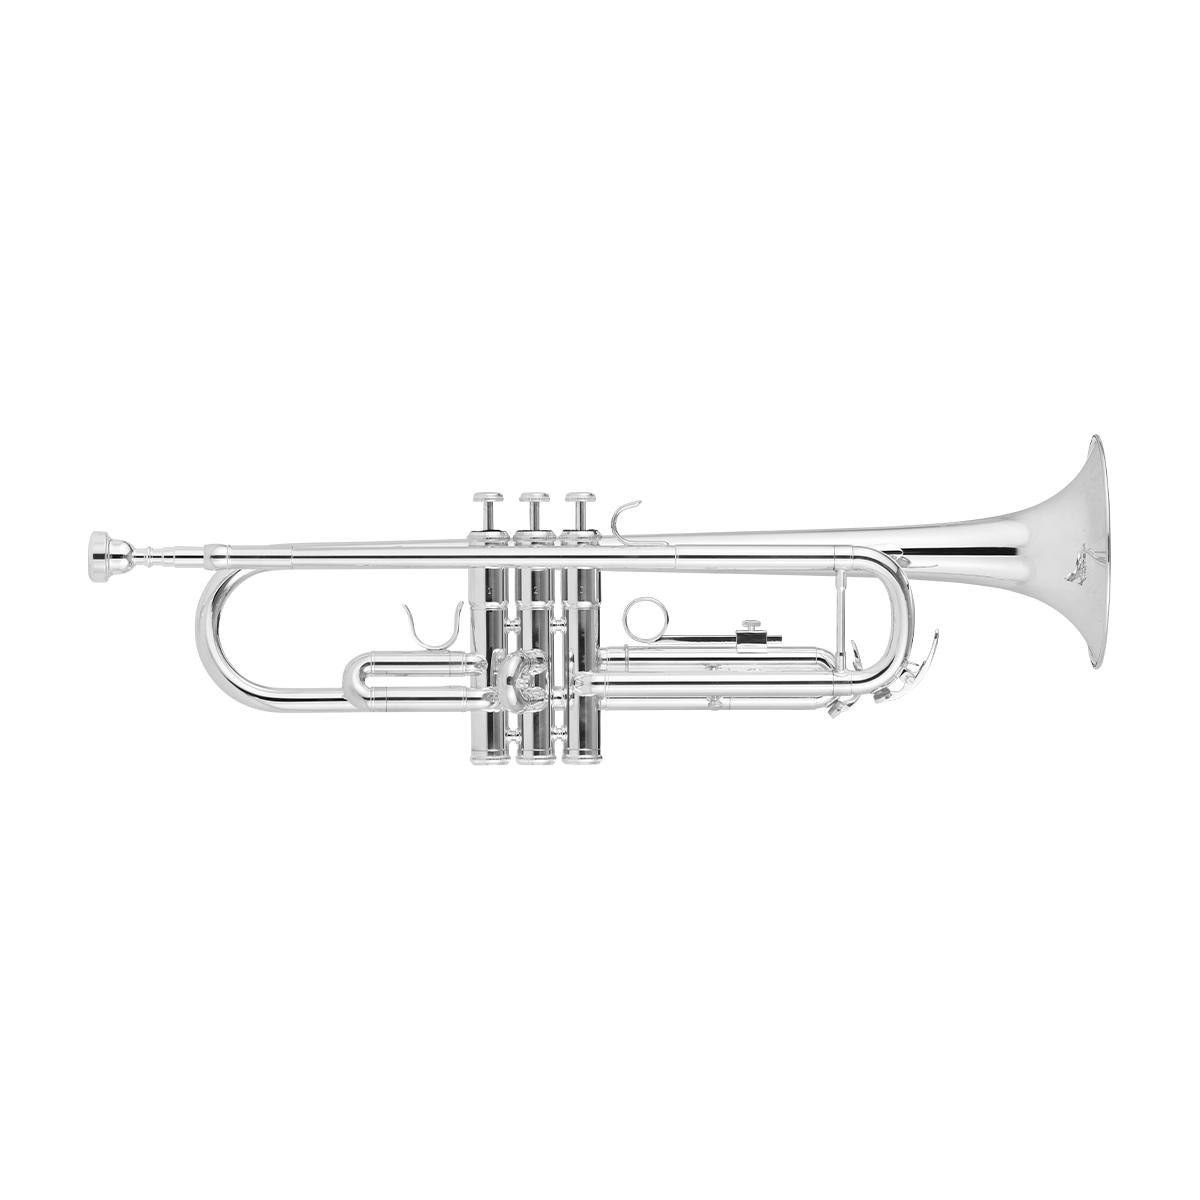 Trompete Sib Alfa GGTR 200S